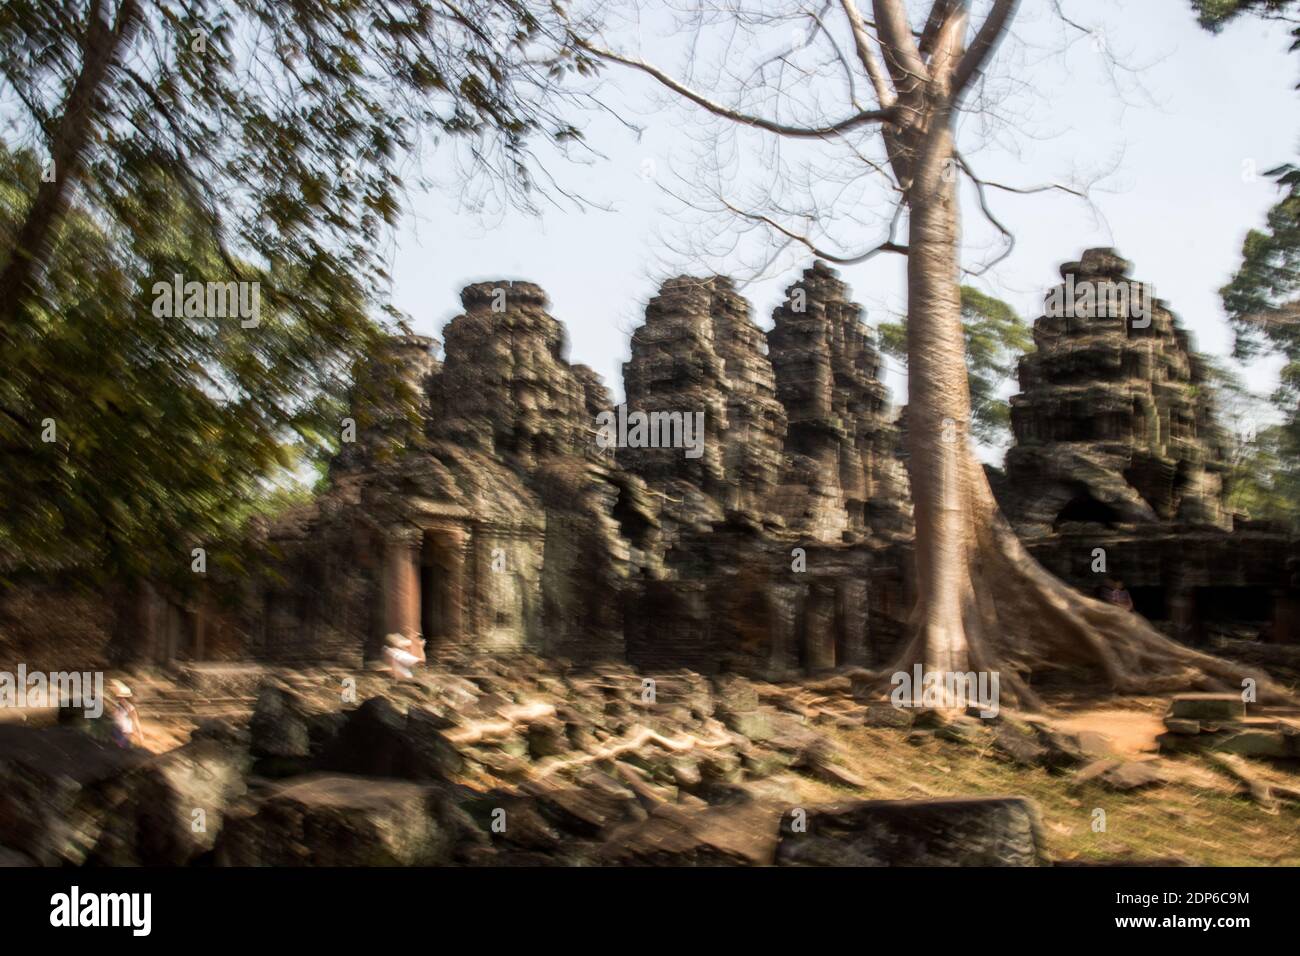 KHM - SOCIÉTÉ - TOURISME AUX TEMPLES DE ANGKOR Avant de devenir une attraction touristique, la cité d’Angkor fut la capitale de l’empire Khmer du IXèm Stock Photo